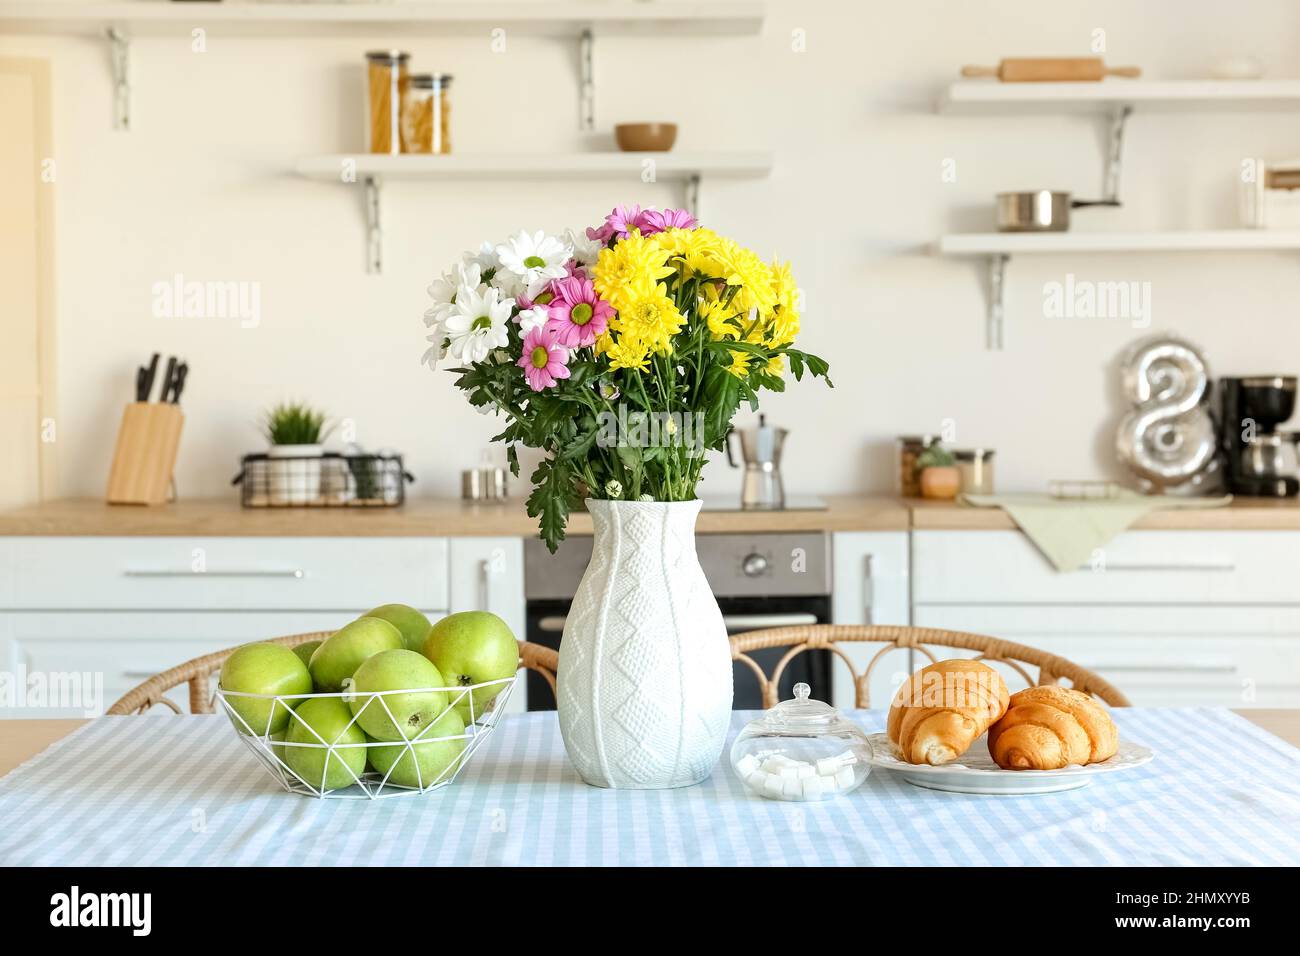 Vase mit schönen Chrysanthemum Blumen auf Esstisch in der Küche  Stockfotografie - Alamy